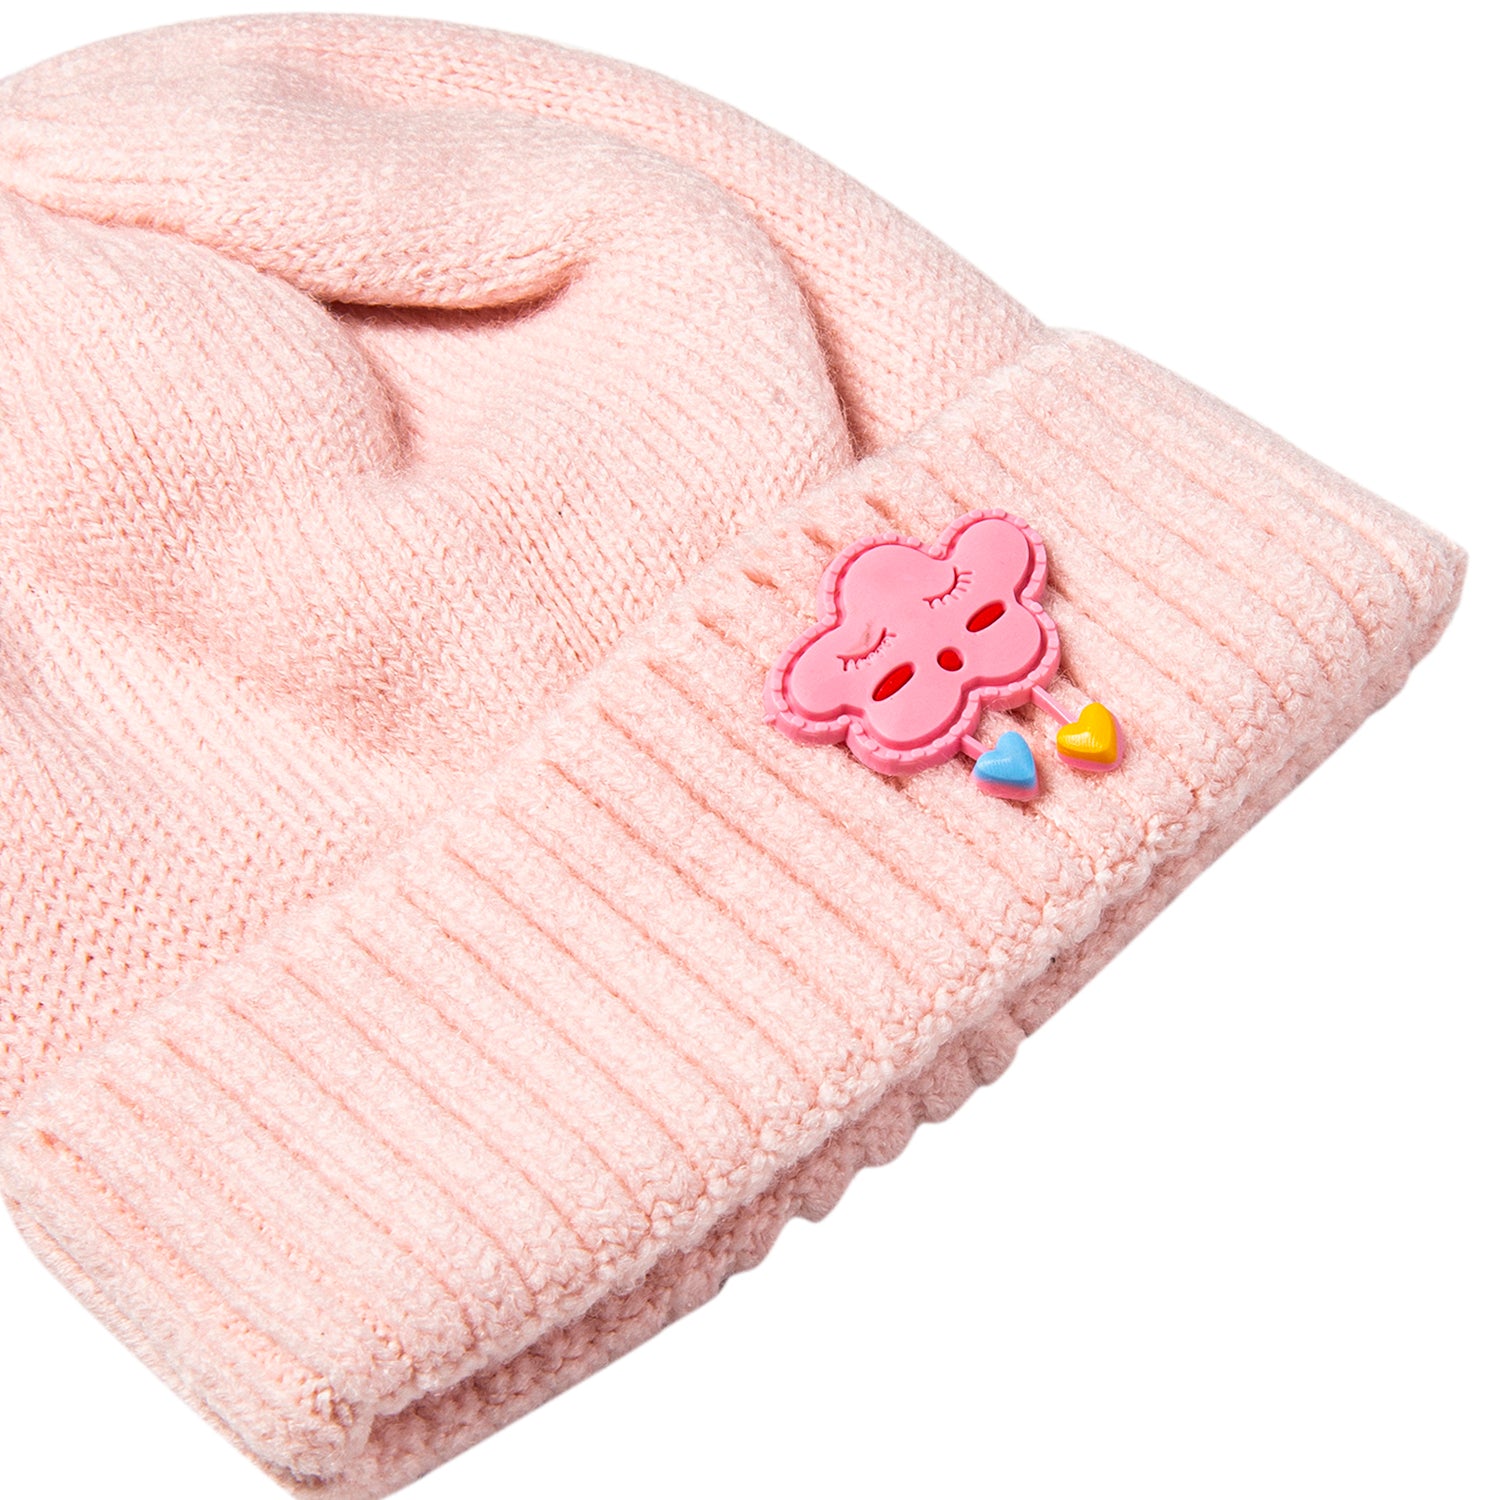 Knit Woollen Cap Winter Beanie Cloud Pink